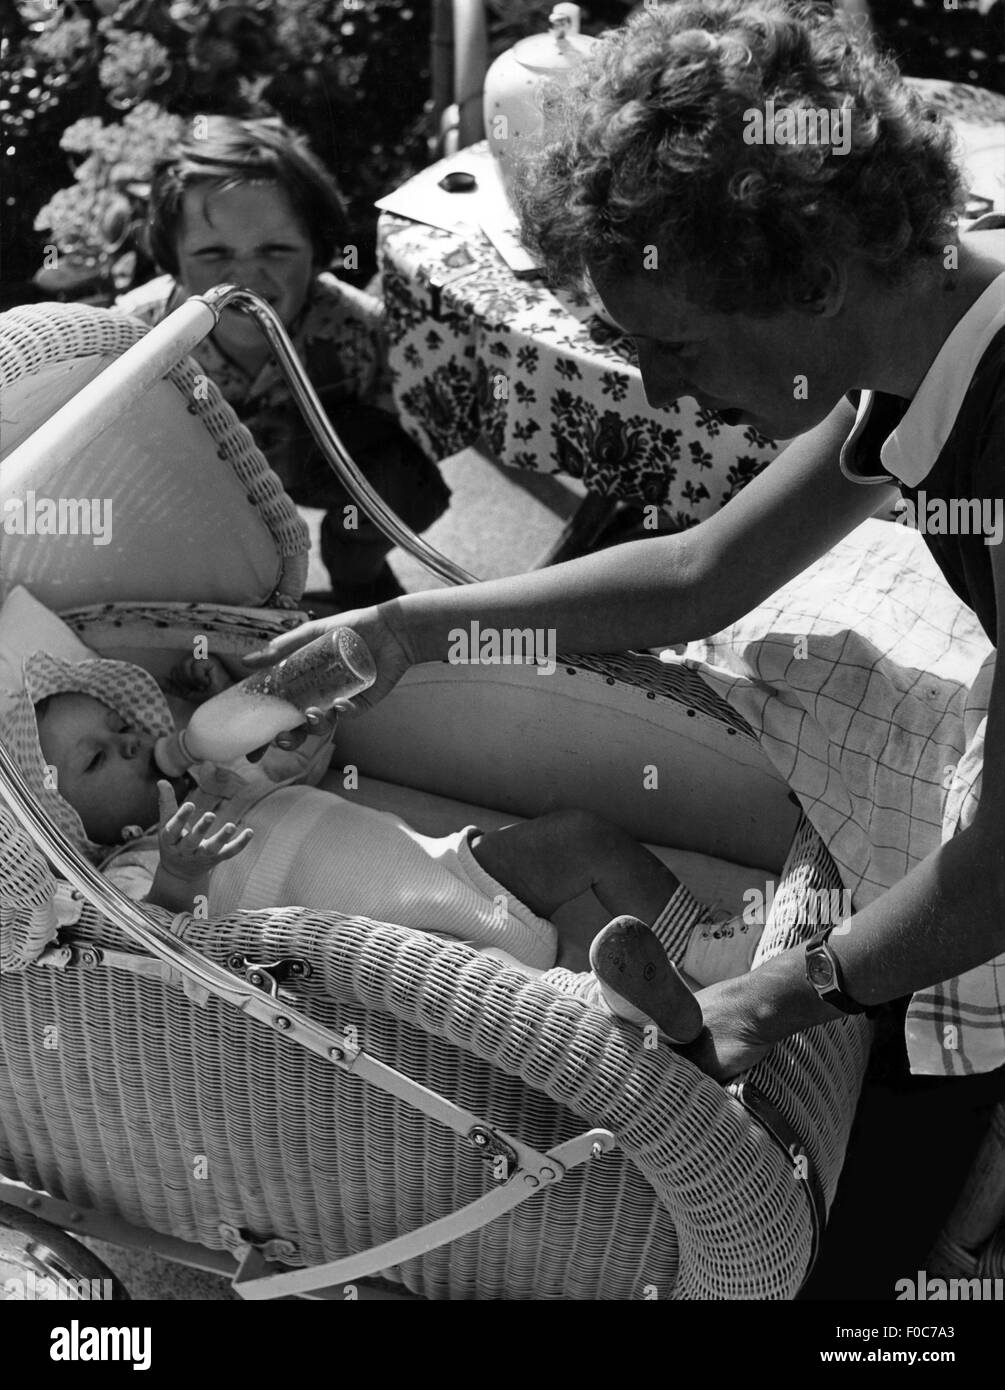 Personen, Kind / Kinder, Babys, Baby, das von seiner Mutter gefüttert wird, 1950er Jahre, Zusatzrechte-Clearences-nicht vorhanden Stockfoto